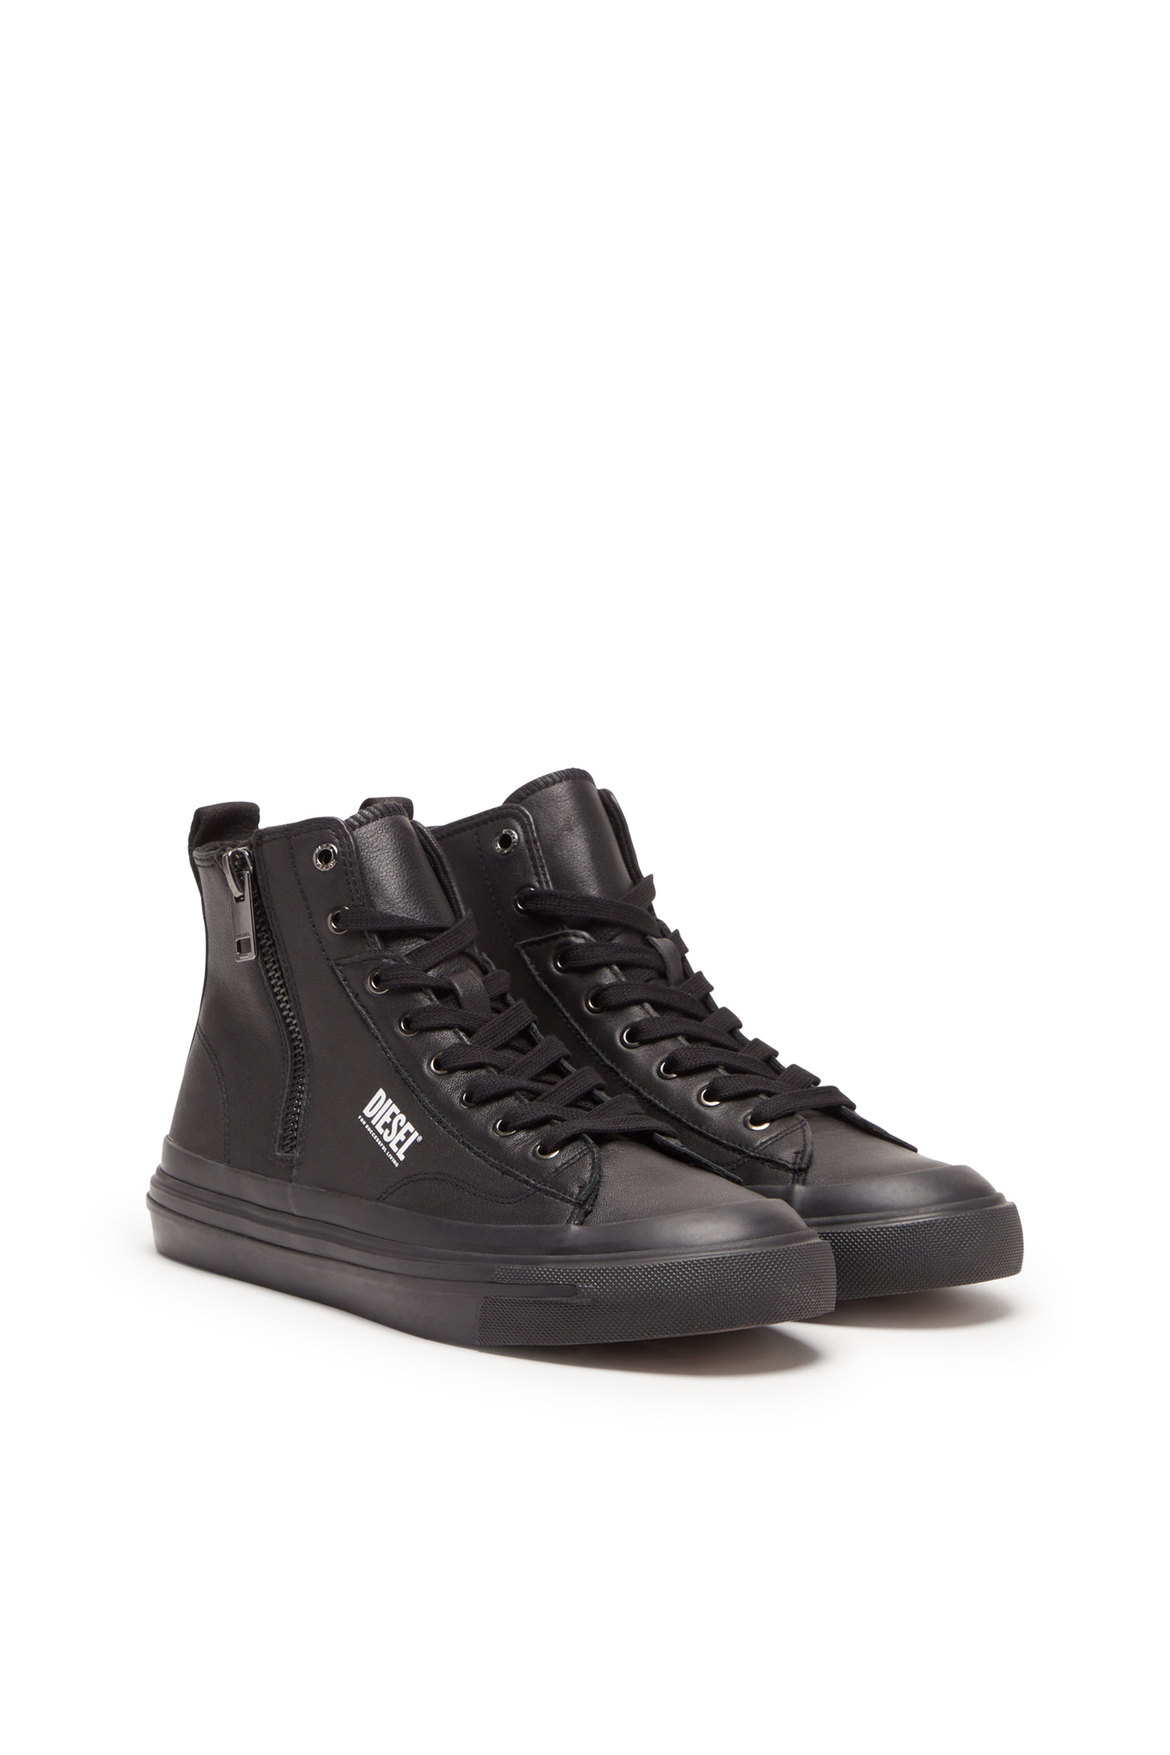 S-Athos Dv Mid - High-top sneakers with side zip | Diesel